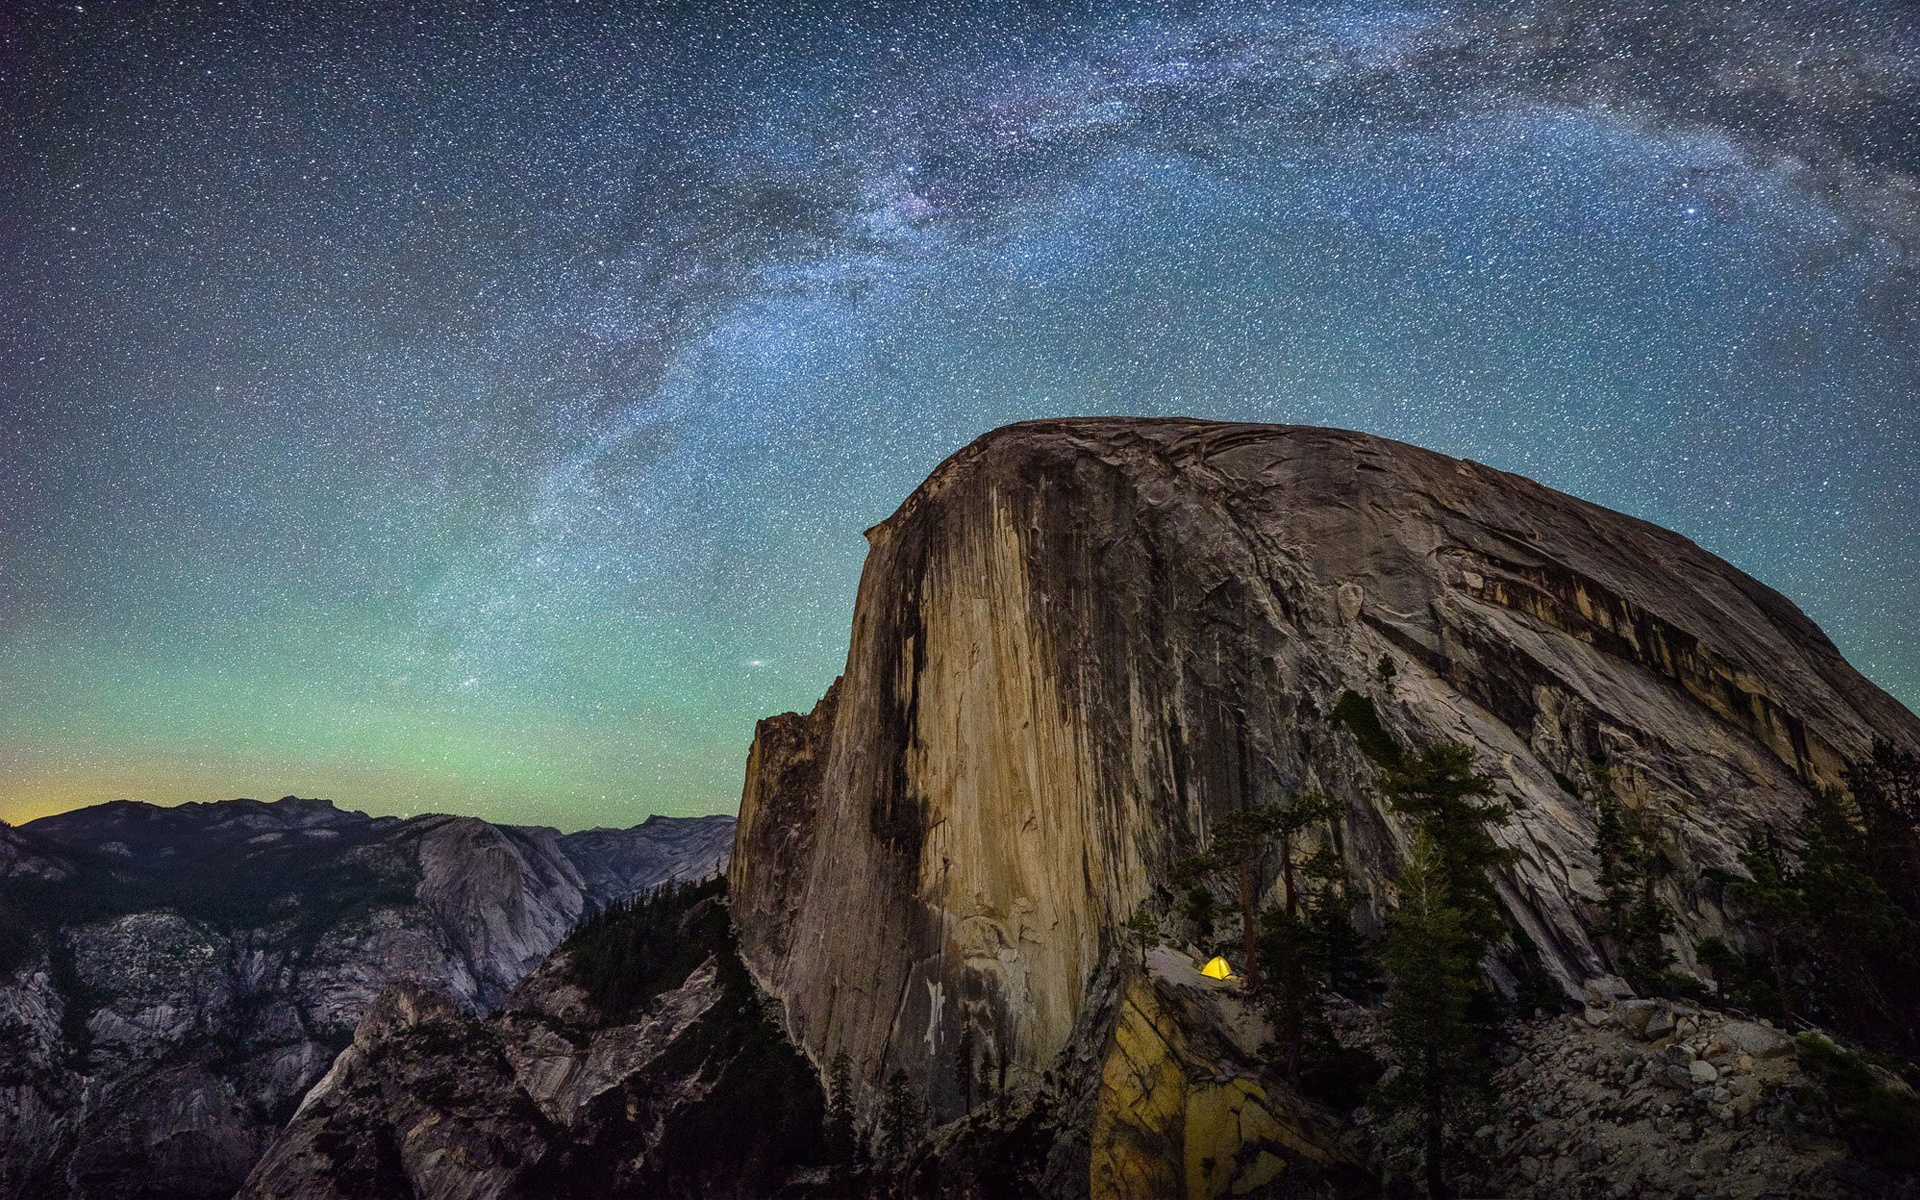 Yosemite Camp Wallpaper in jpg format for free download